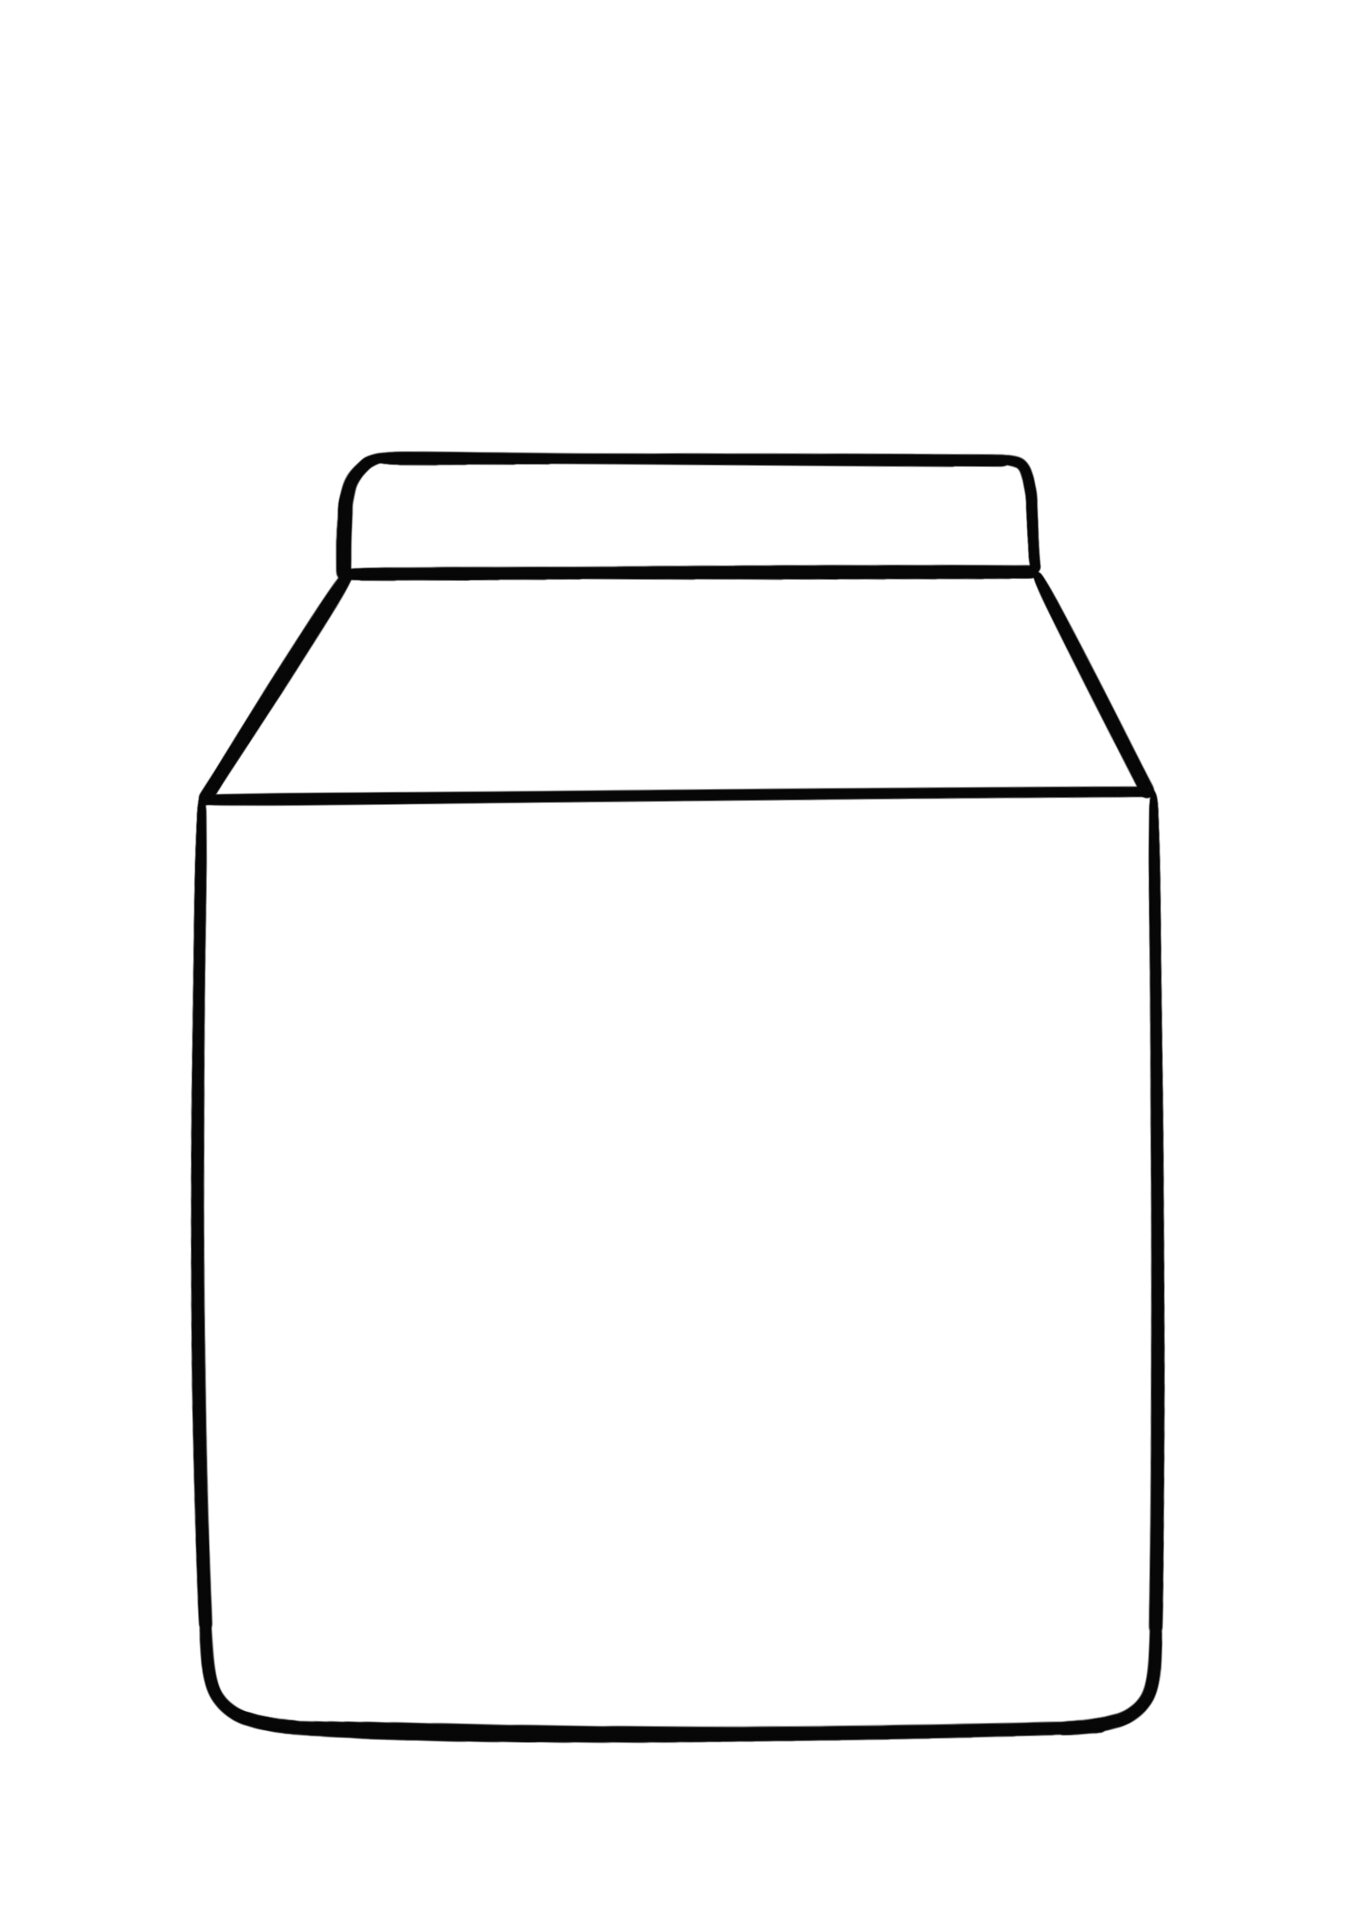 简笔画教程分享 牛奶